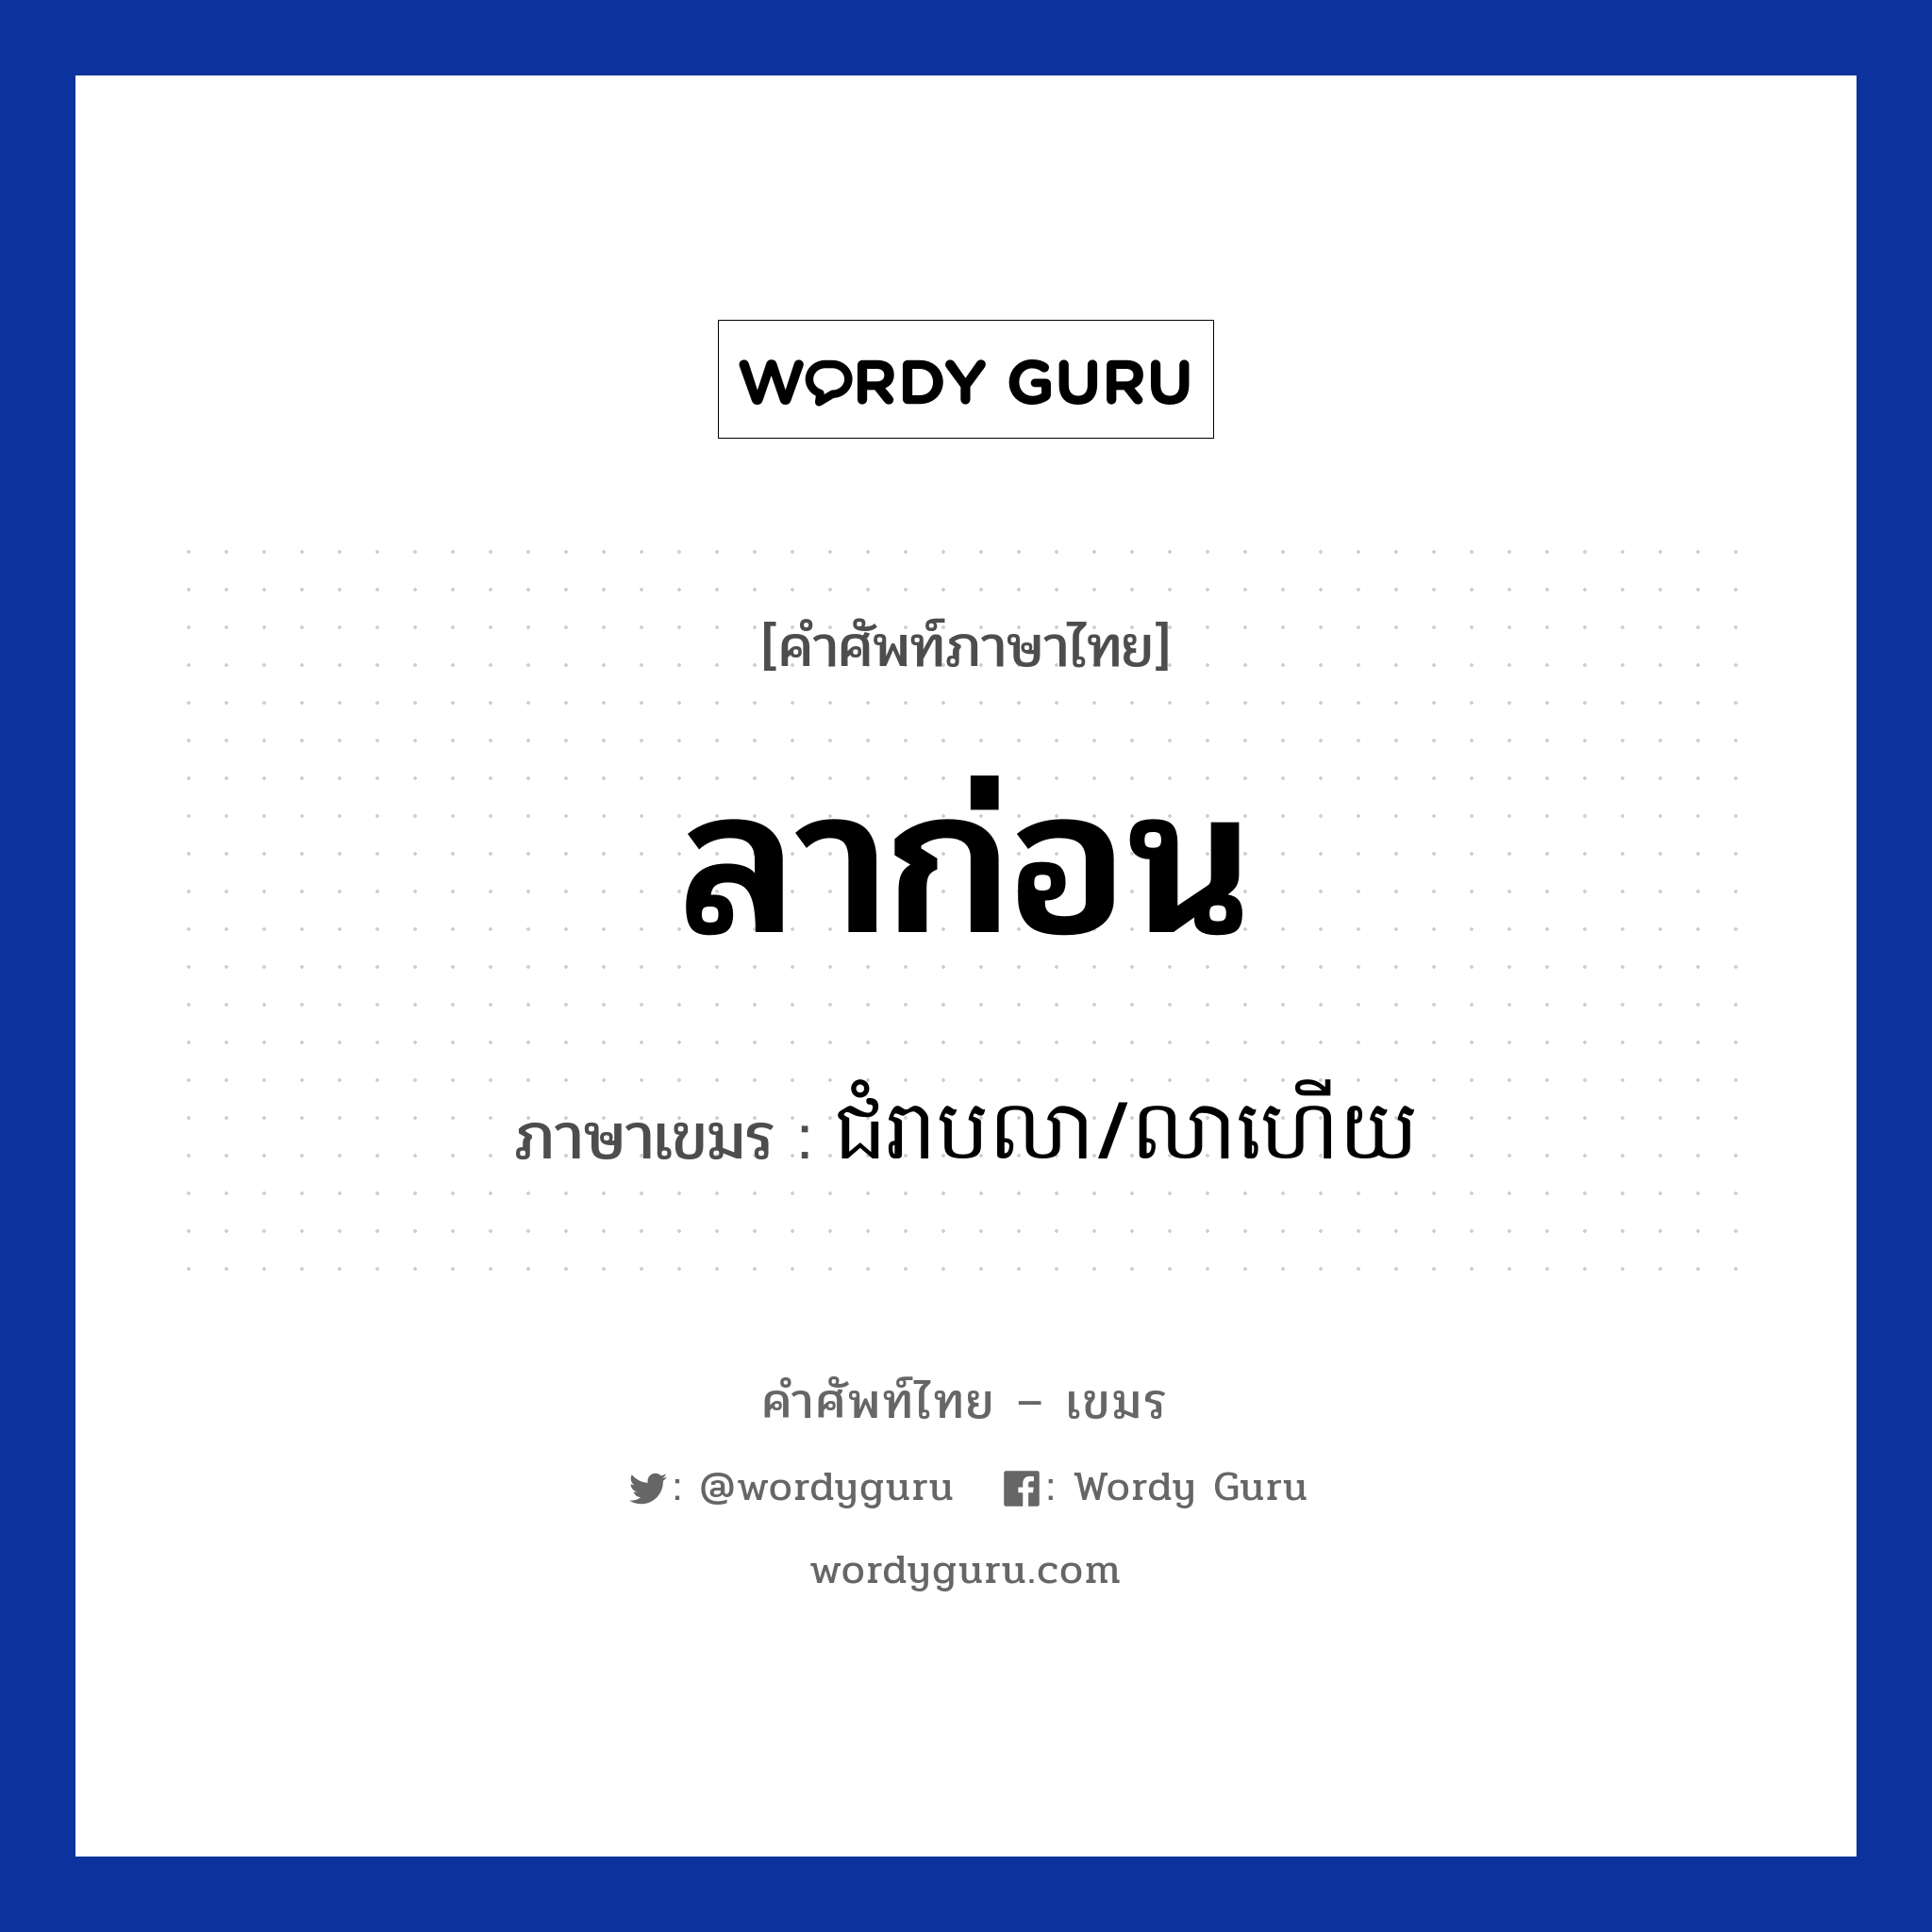 ลาก่อน ภาษาเขมรคืออะไร, คำศัพท์ภาษาไทย - เขมร ลาก่อน ภาษาเขมร ជំរាបលា/លាហេីយ หมวด ทักทาย Chom reab lea/lea hery หมวด ทักทาย